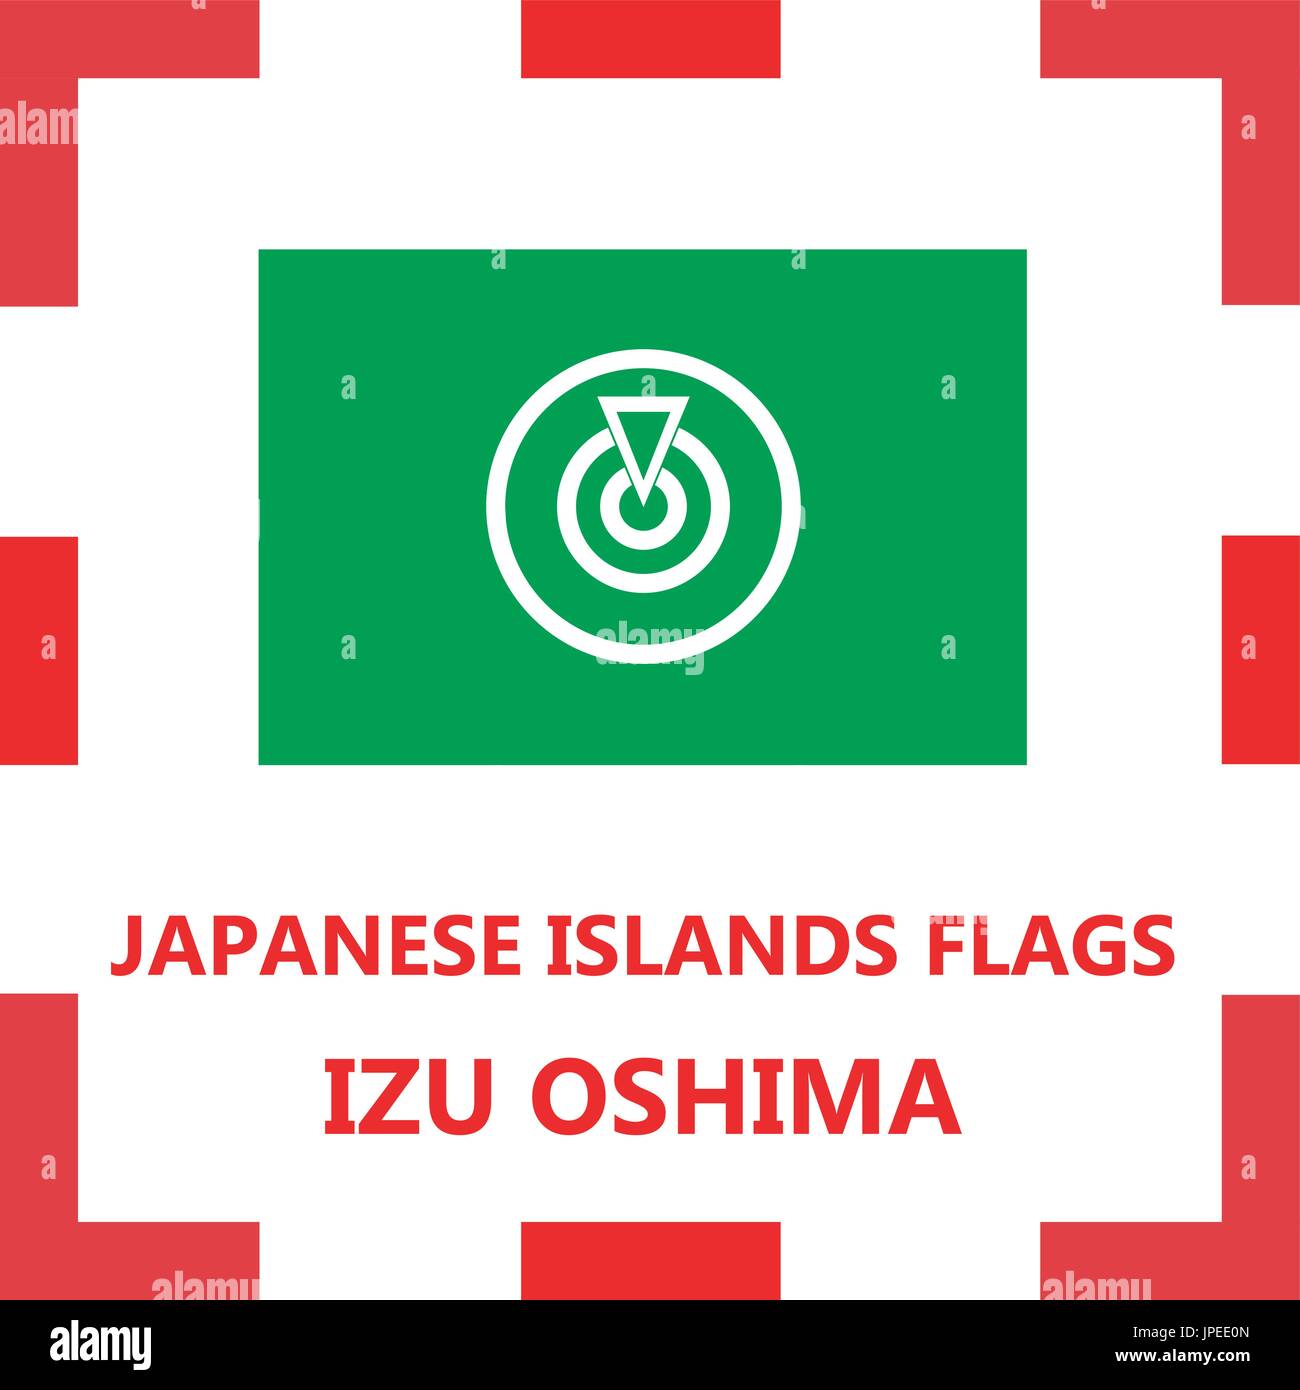 Pavillon de l'île japonaise d'Izu Oshima Illustration de Vecteur